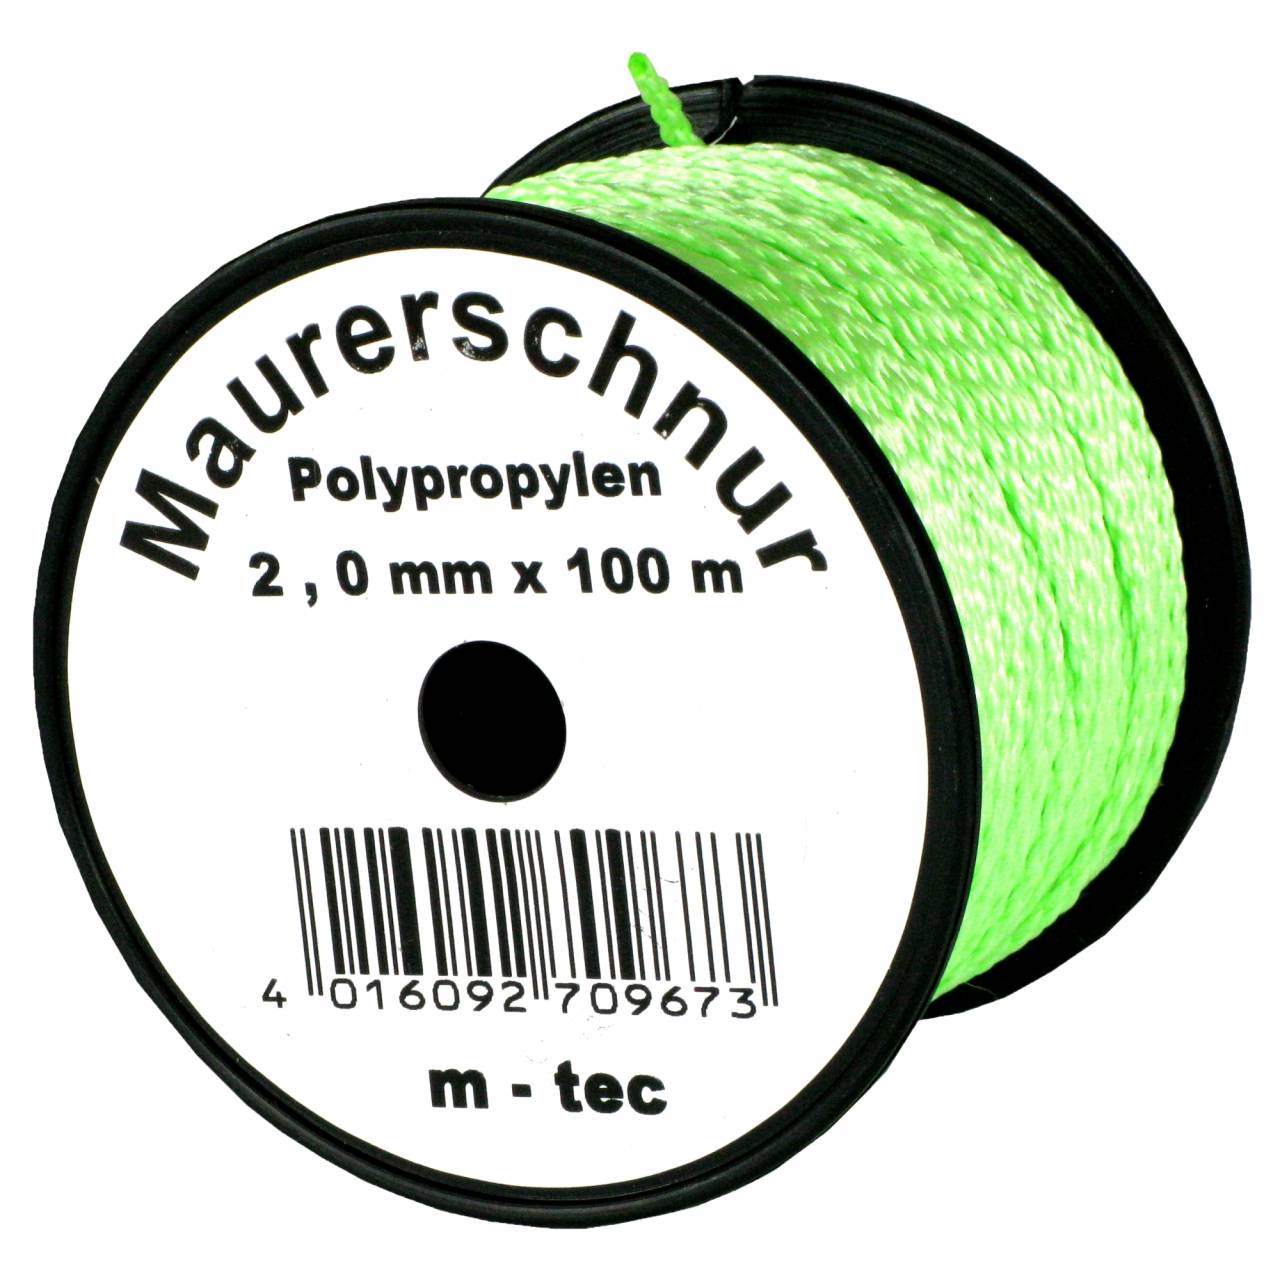 Lot-Maurerschnur 100 m x Ø 2,0 mm Grün-Fluoreszierend